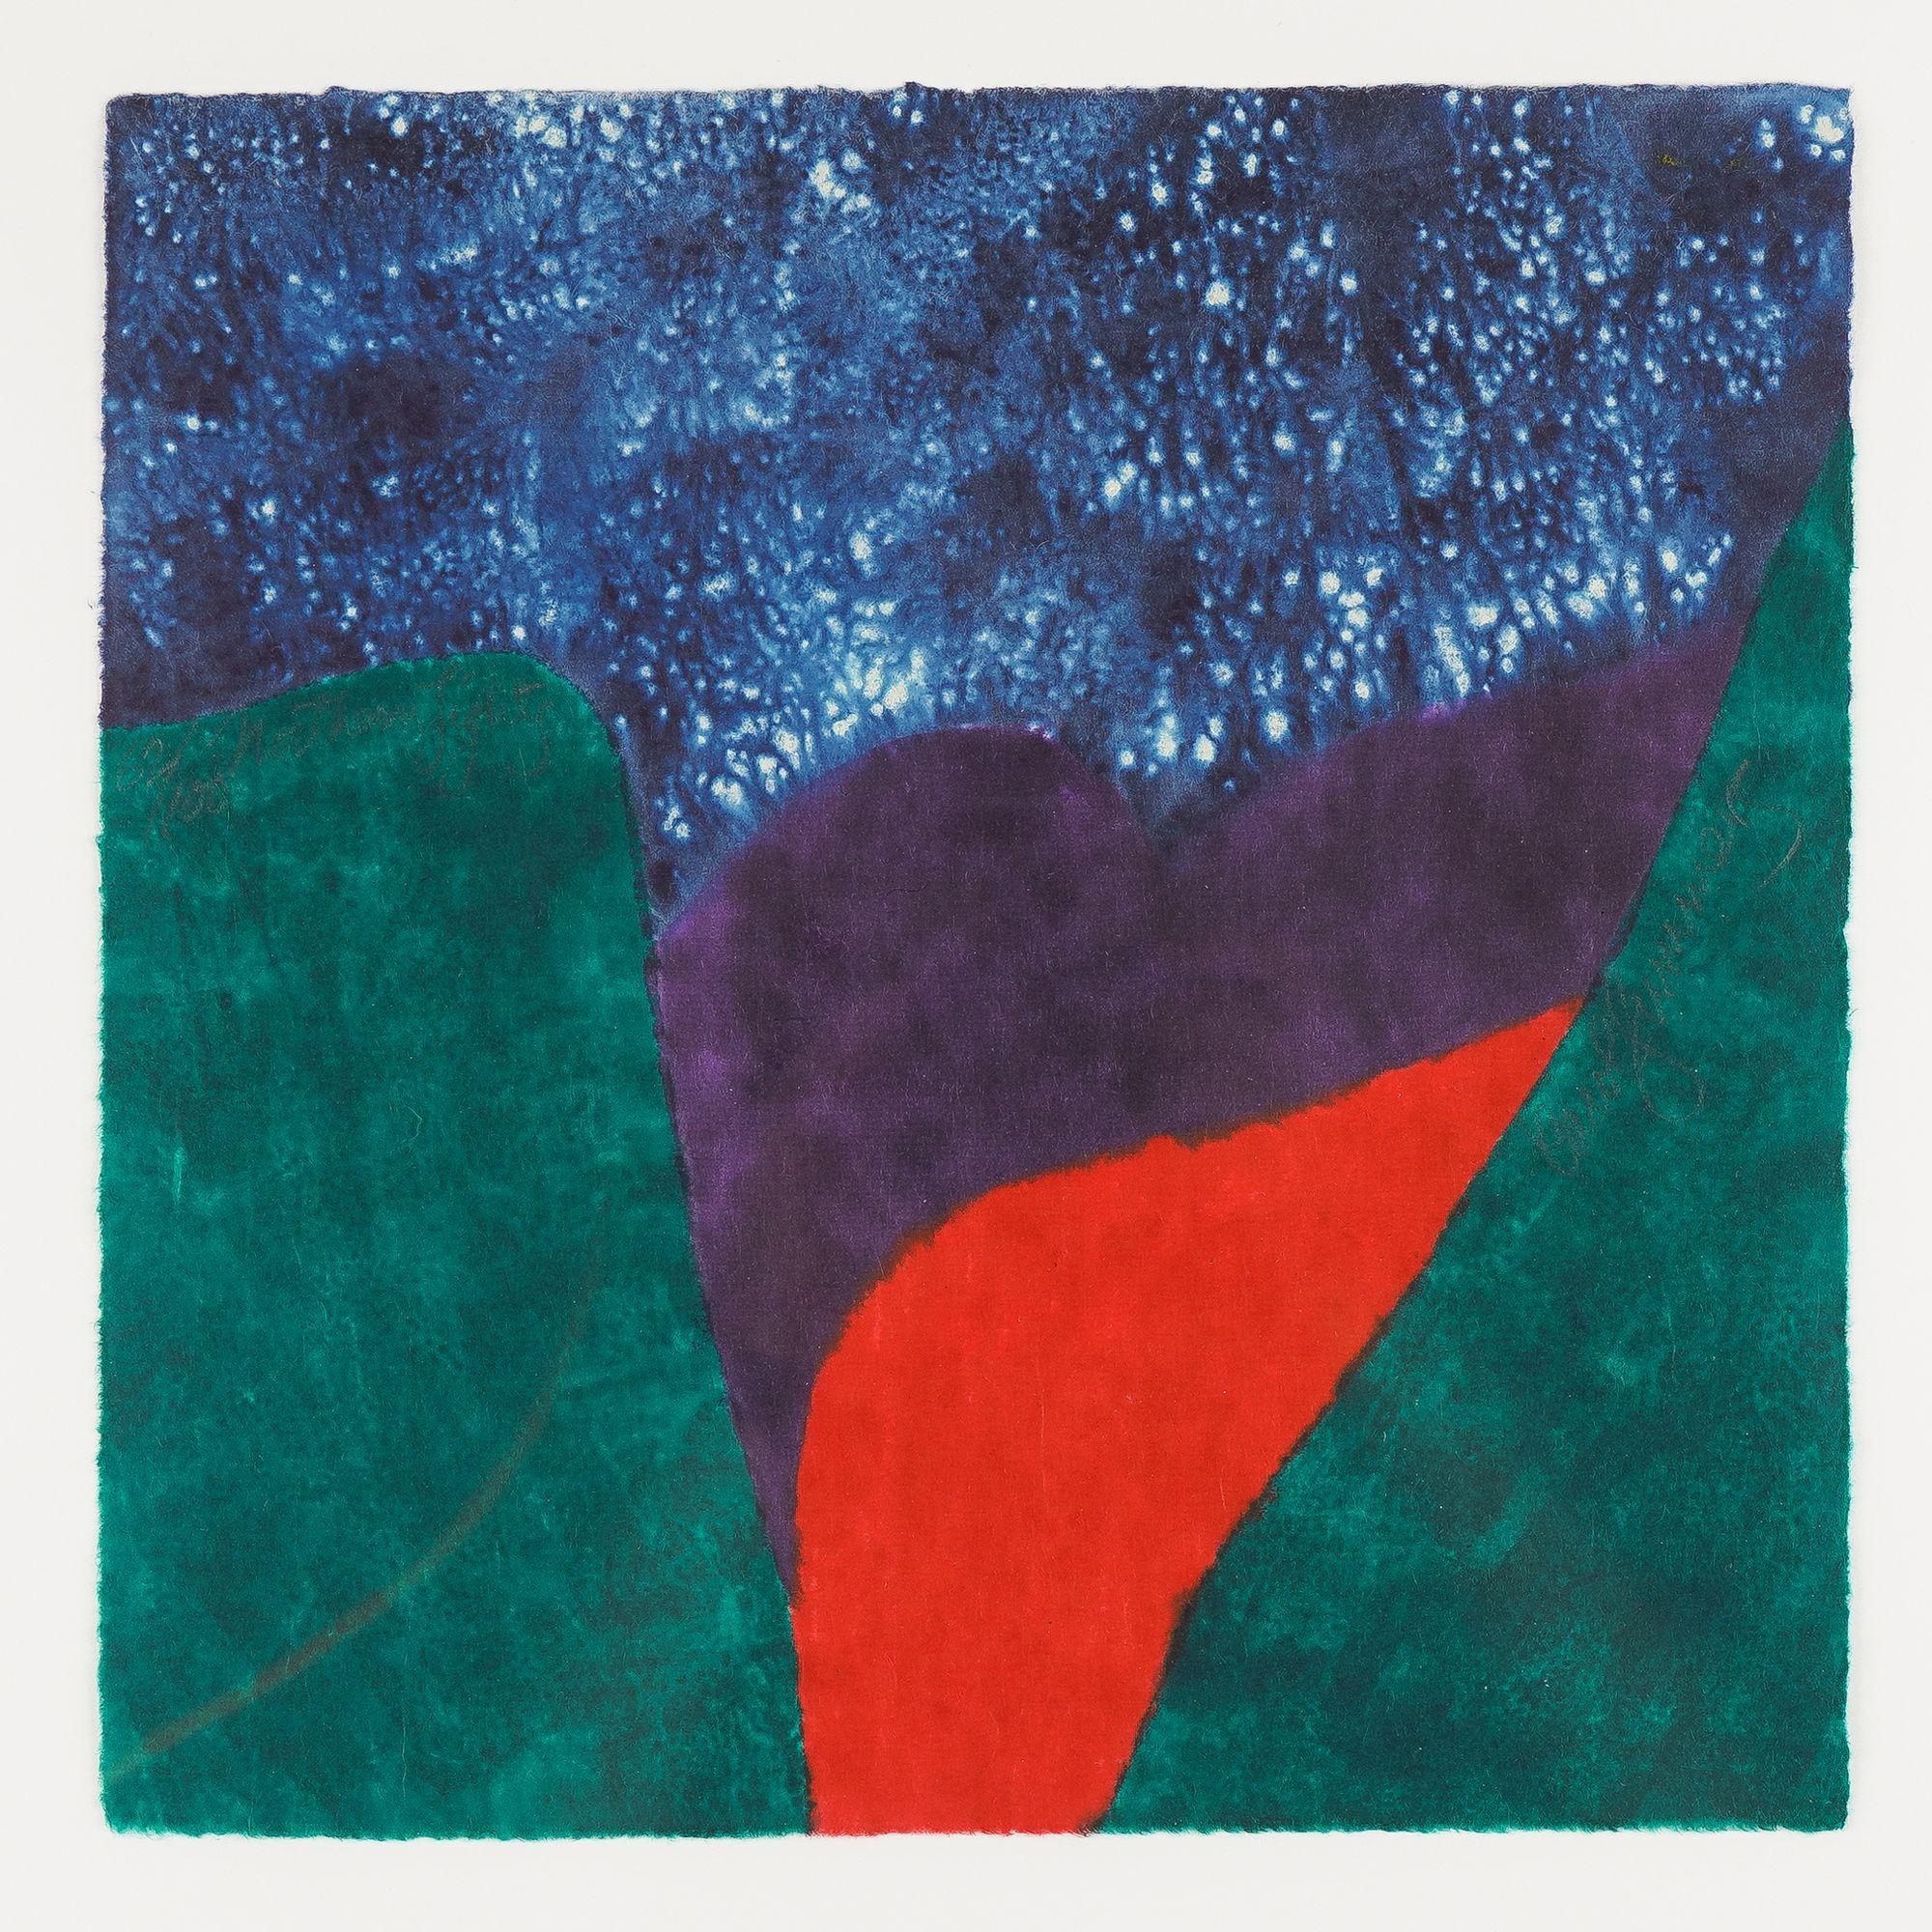 Polychromer abstrakter Farbholzschnitt in Blau, Grün, Violett und Rot.

Signiert, nummeriert und datiert in Graphit auf dem Werk: 62/100

Amerikanisch, 2002.